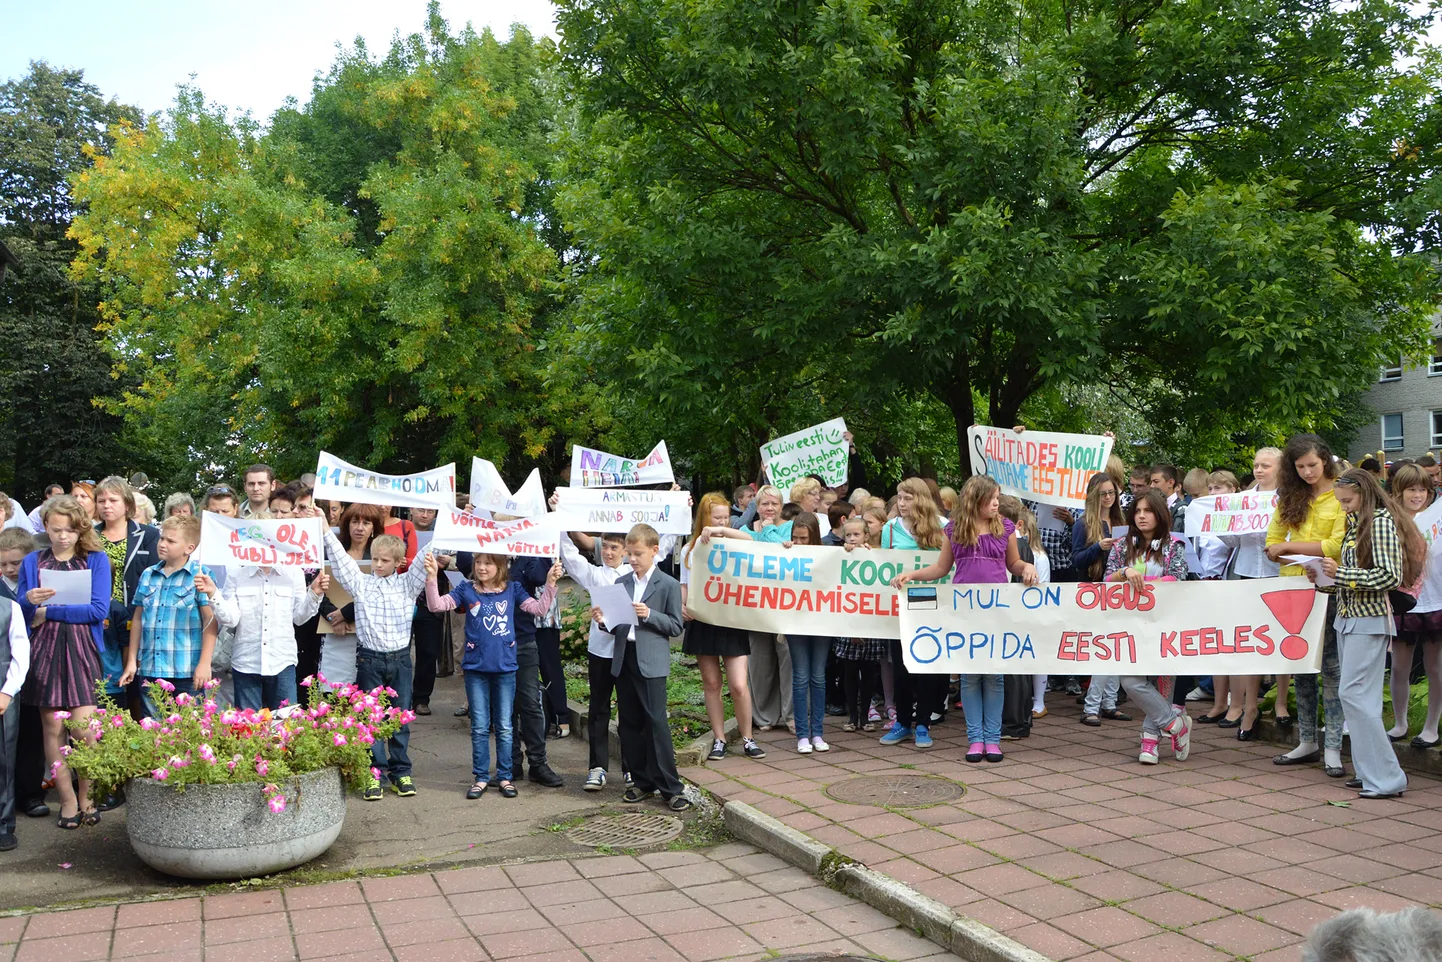 Нарва годами борется за сохранение эстоноязычного гимназического образования. Этот снимок сделан на акции протеста, которая состоялась в сентябре 2013 года перед Нарвской эстонской гимназией.